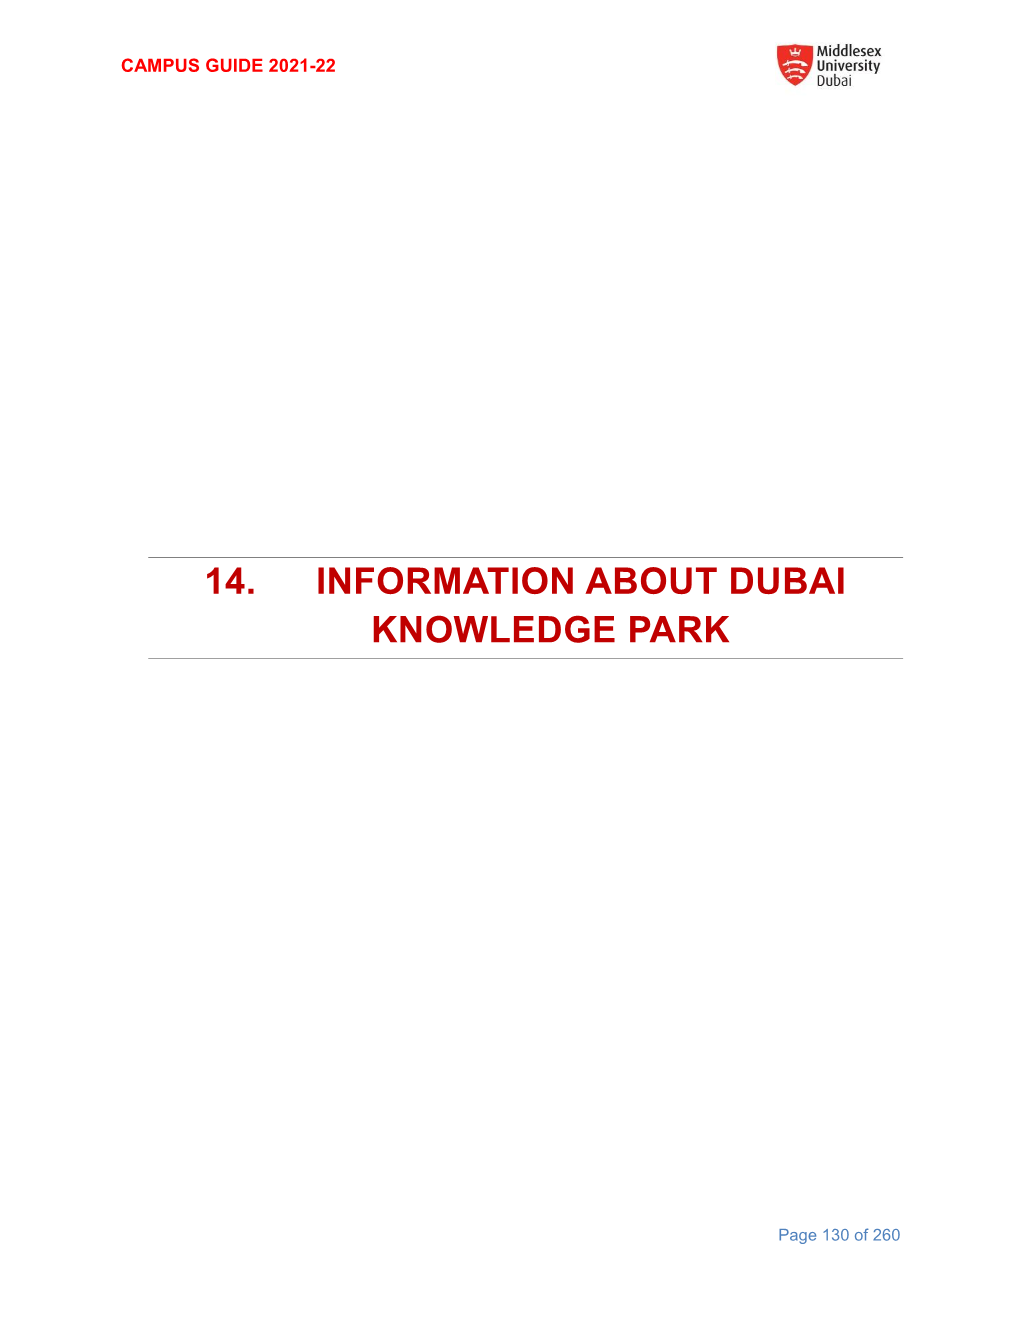 14. Information About Dubai Knowledge Park